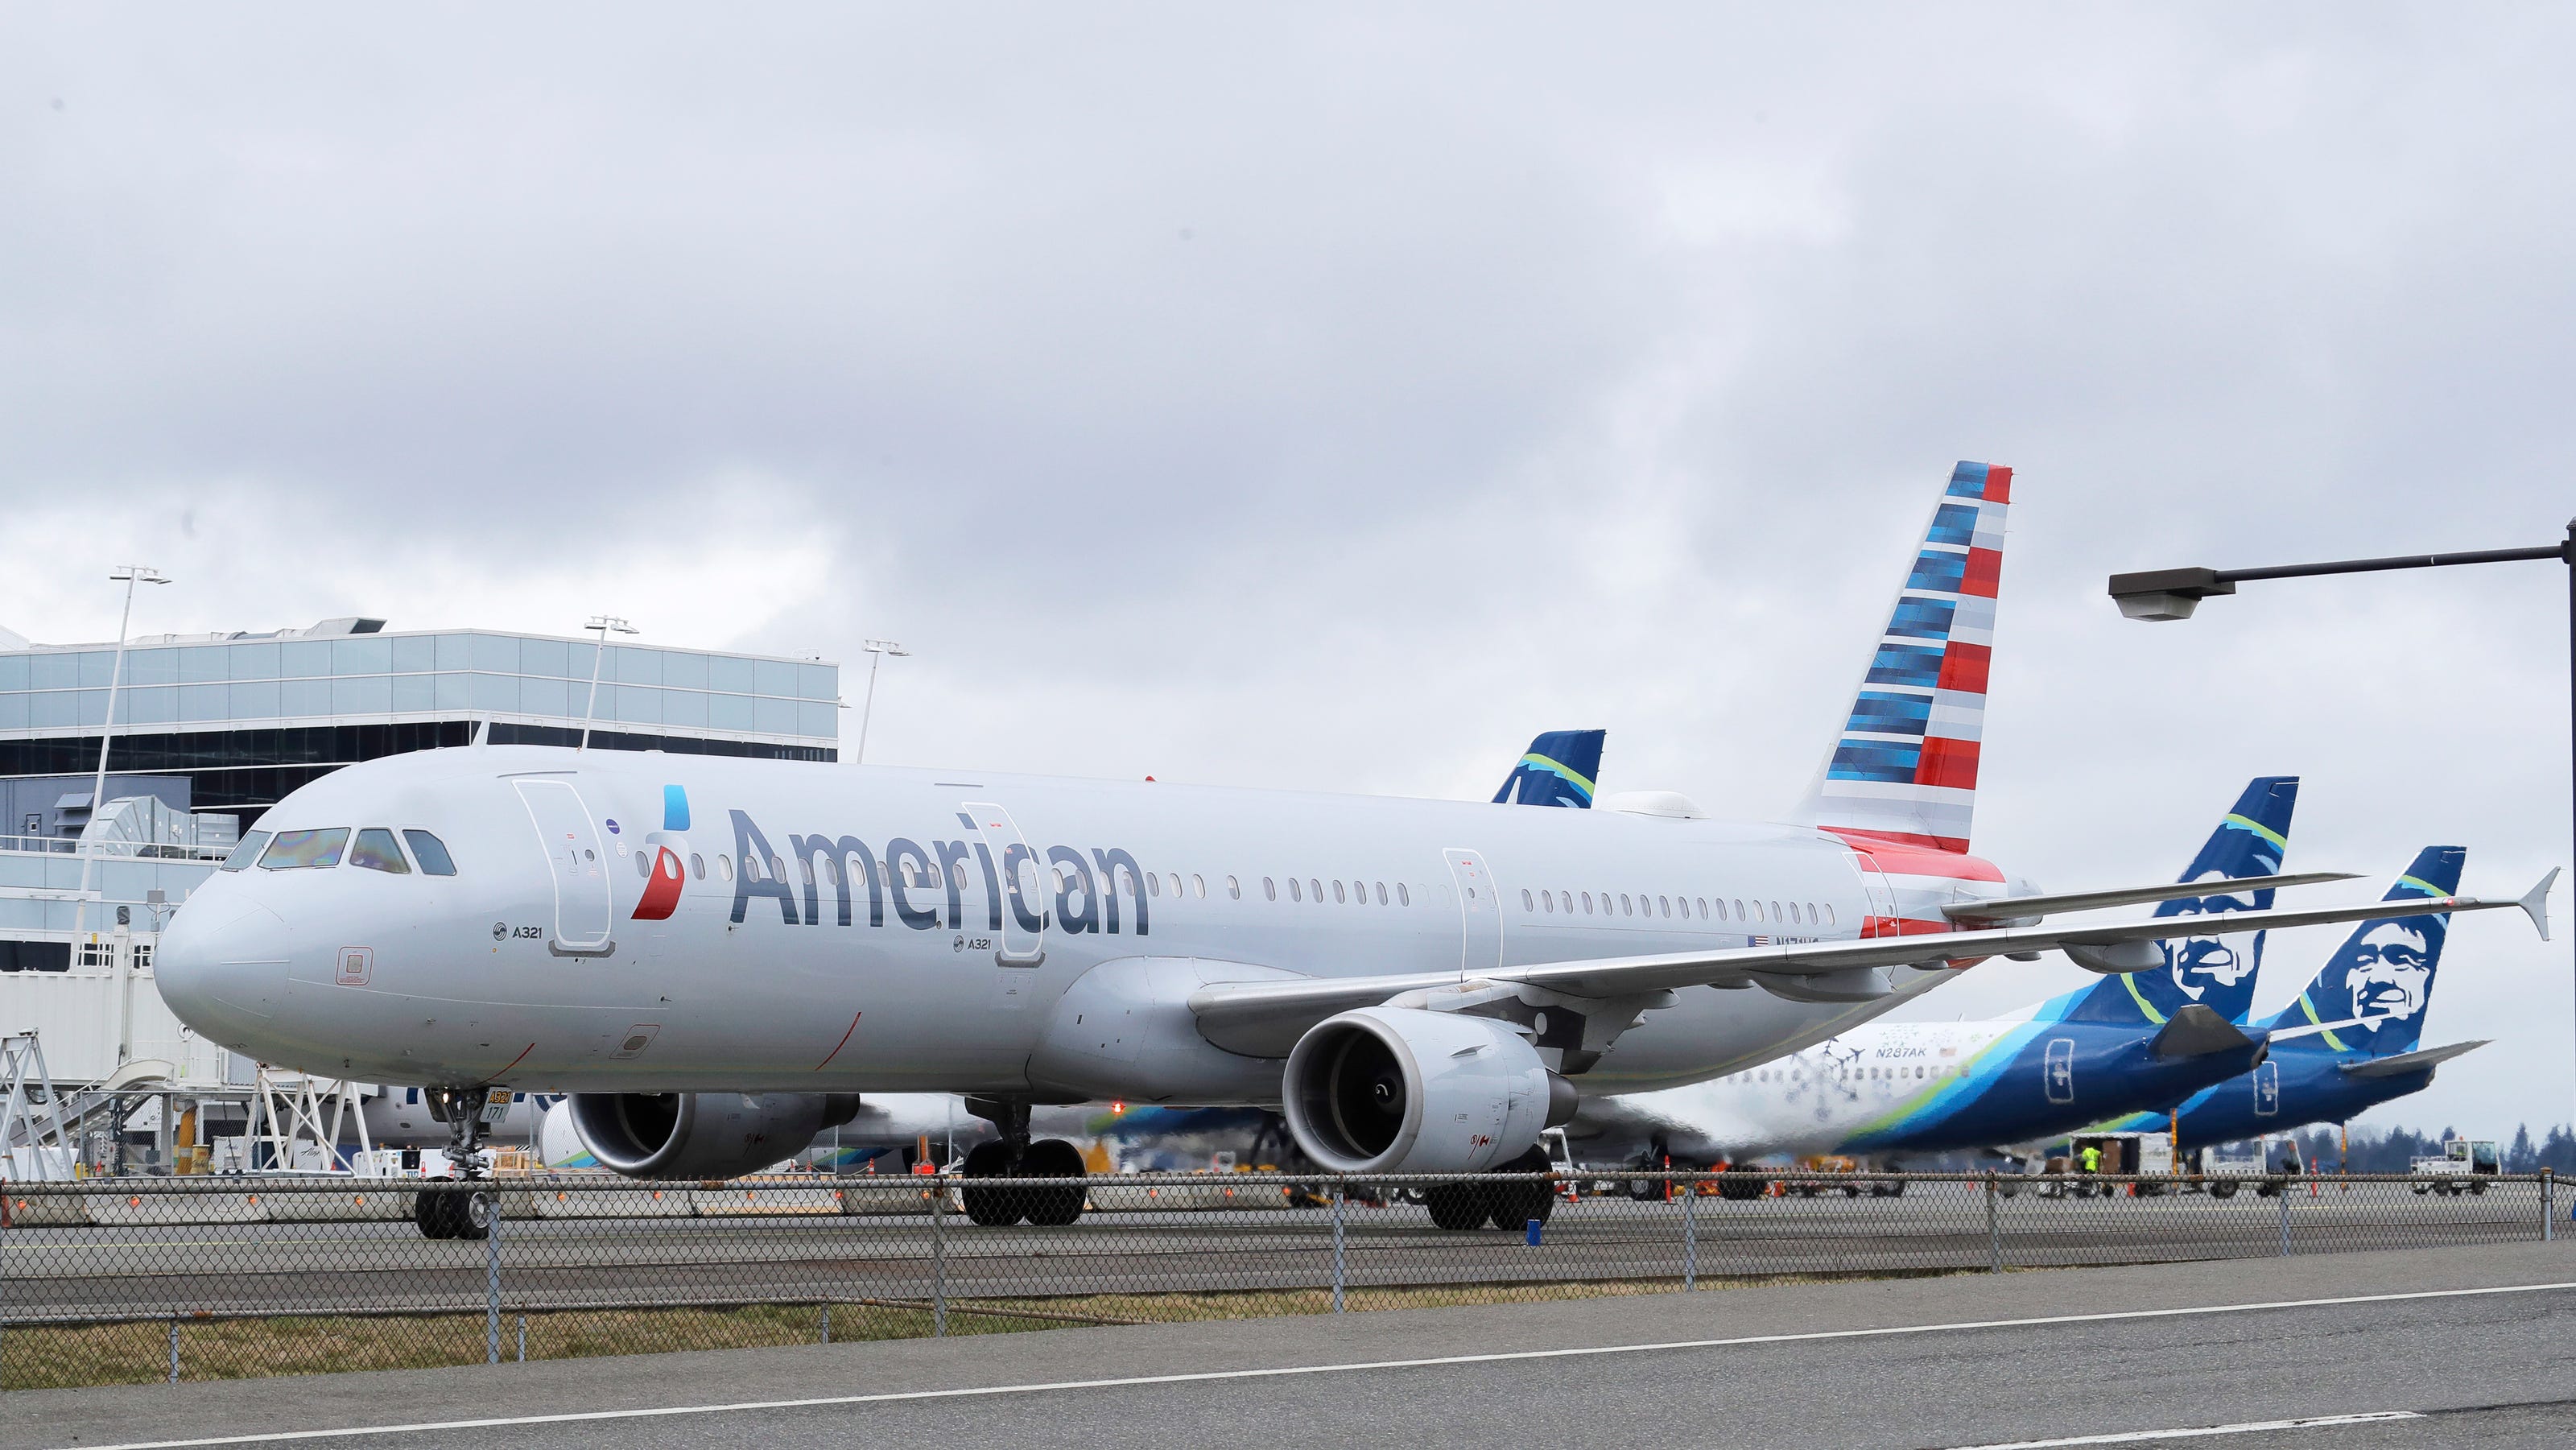 American Airlines passenger tries to open exit door; flight diverted